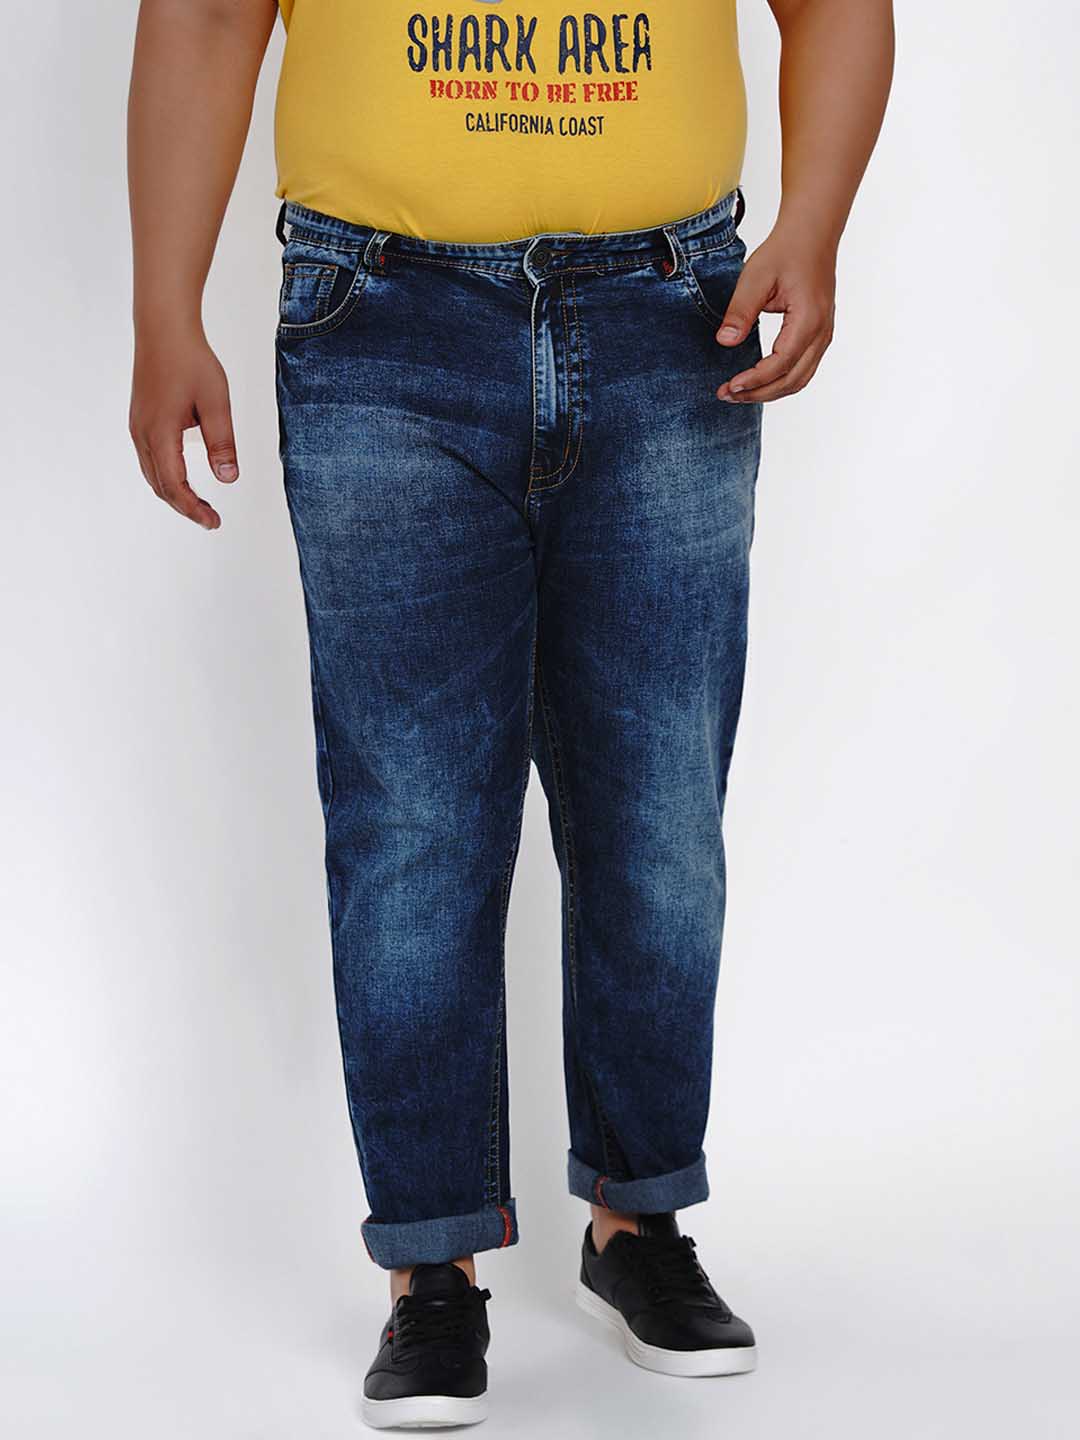 bottomwear/jeans/JPJ1284/jpj1284-1.jpg